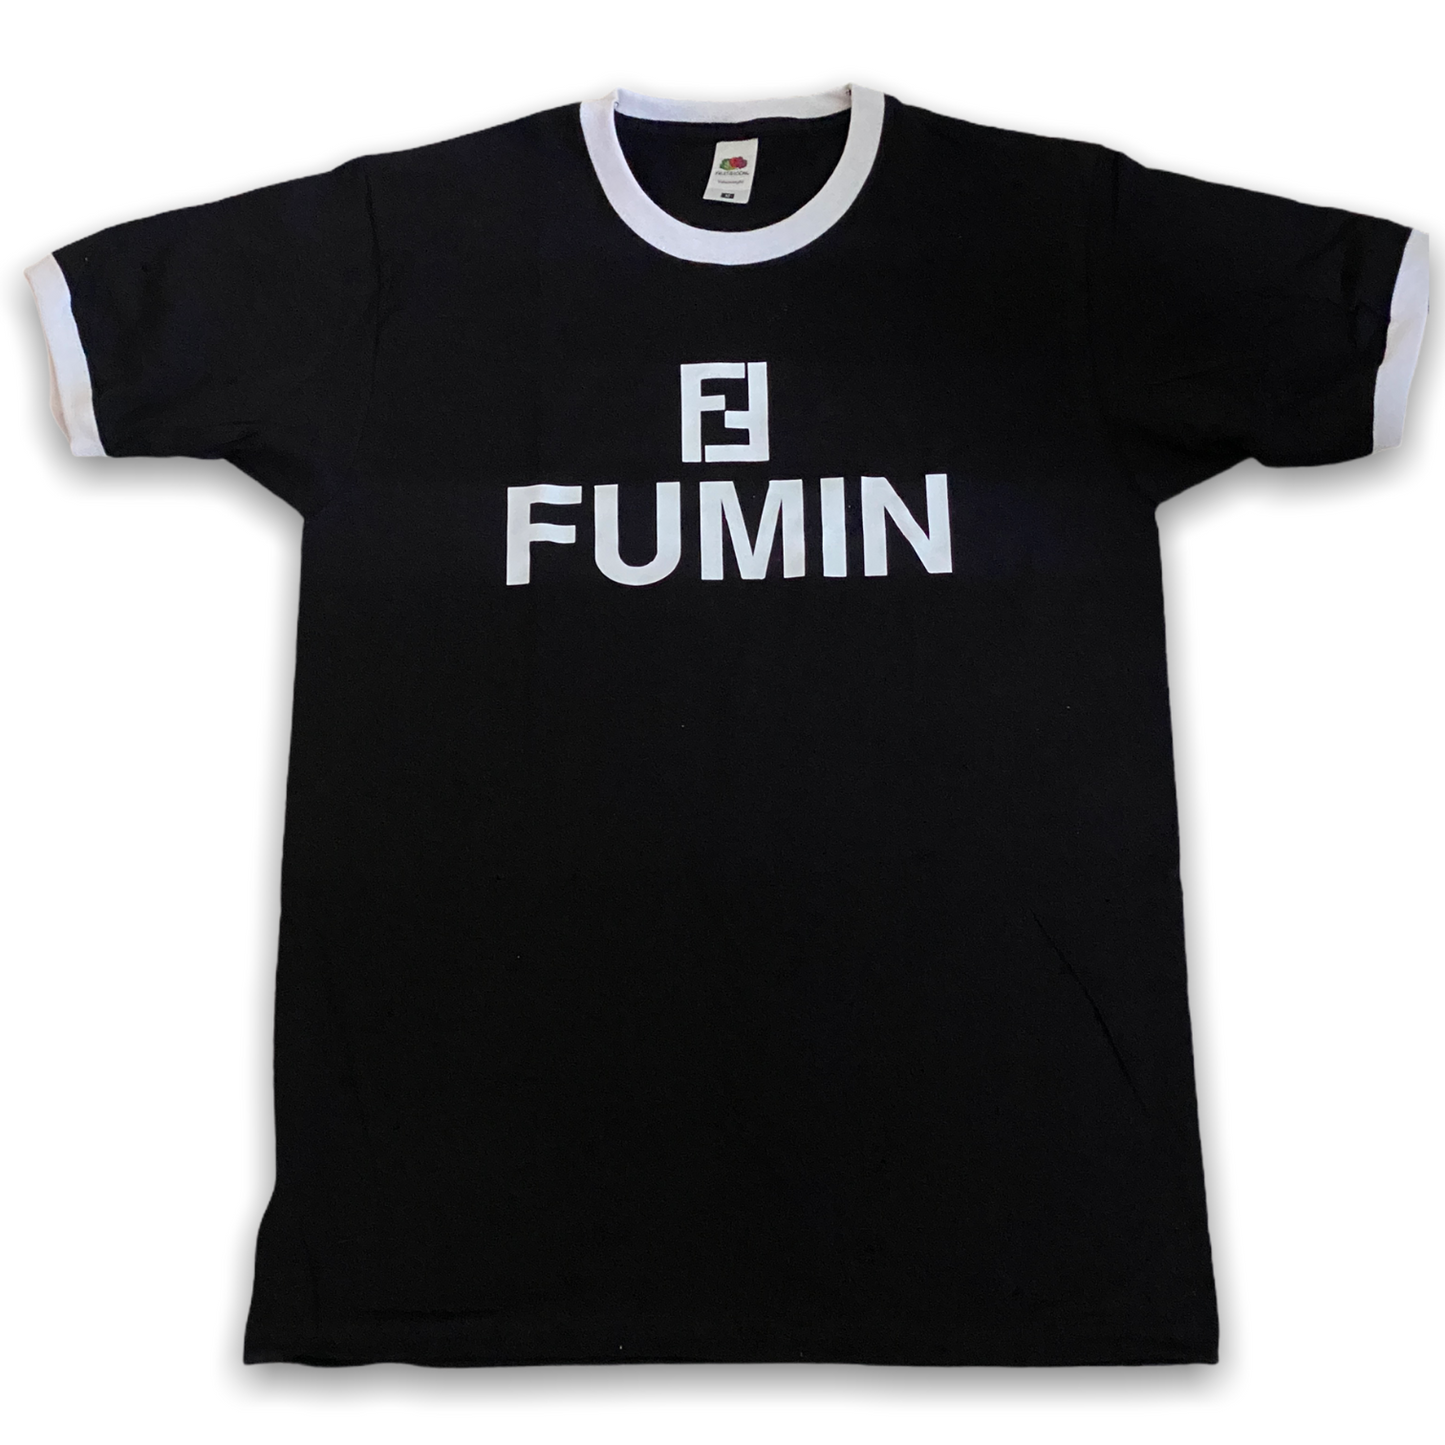 FUMIN T-shirt